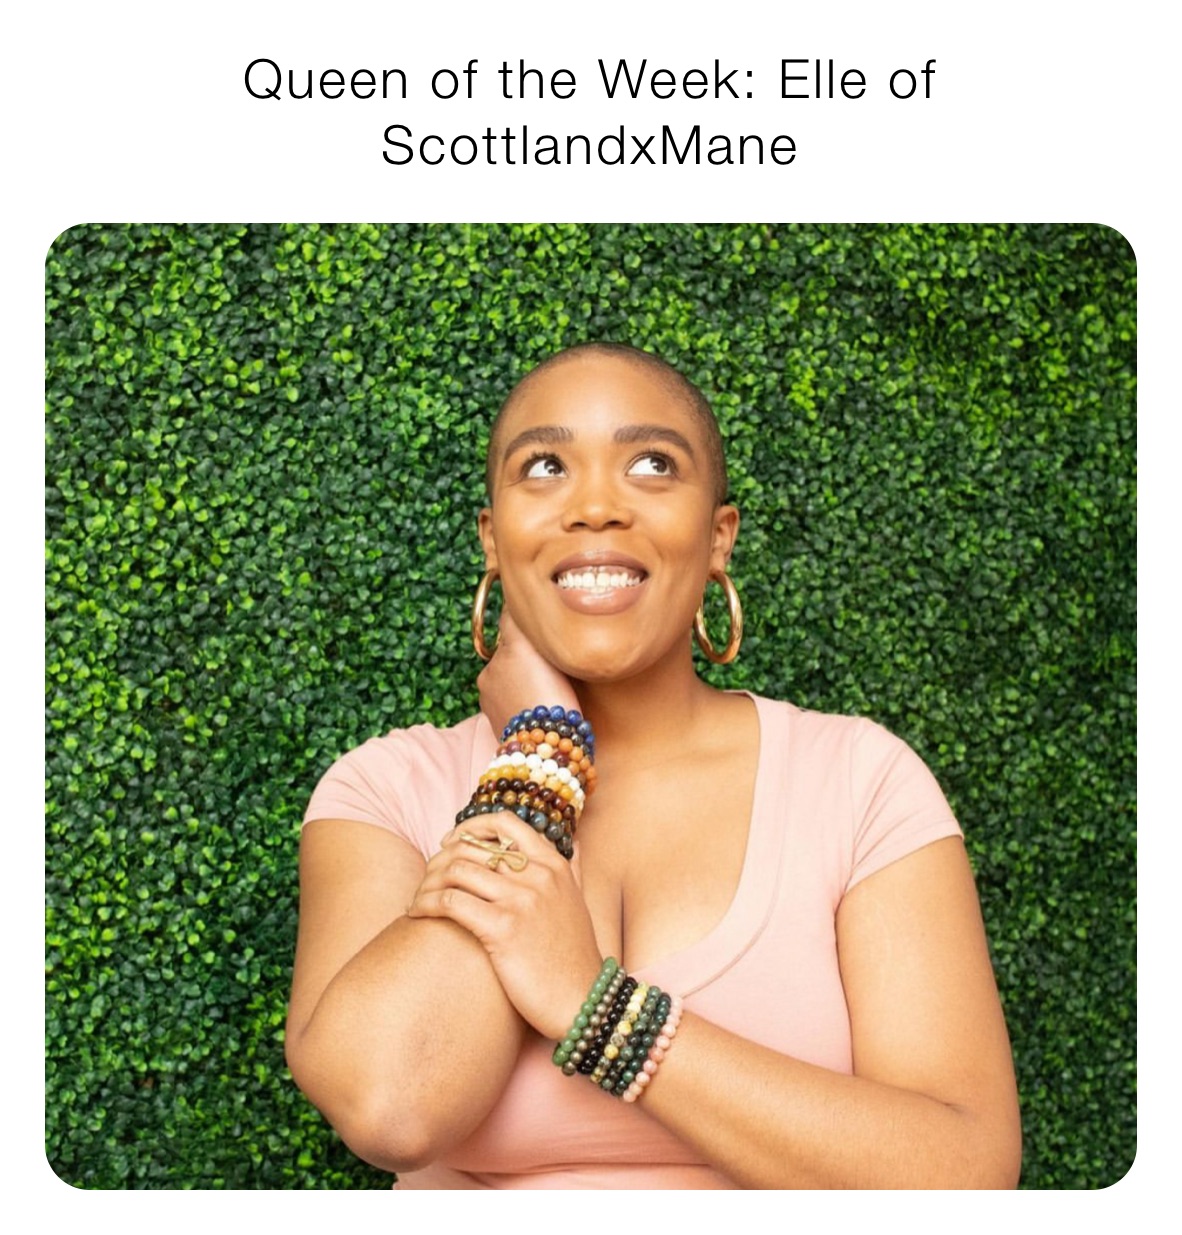 Queen of the Week: Elle of ScottlandxMane